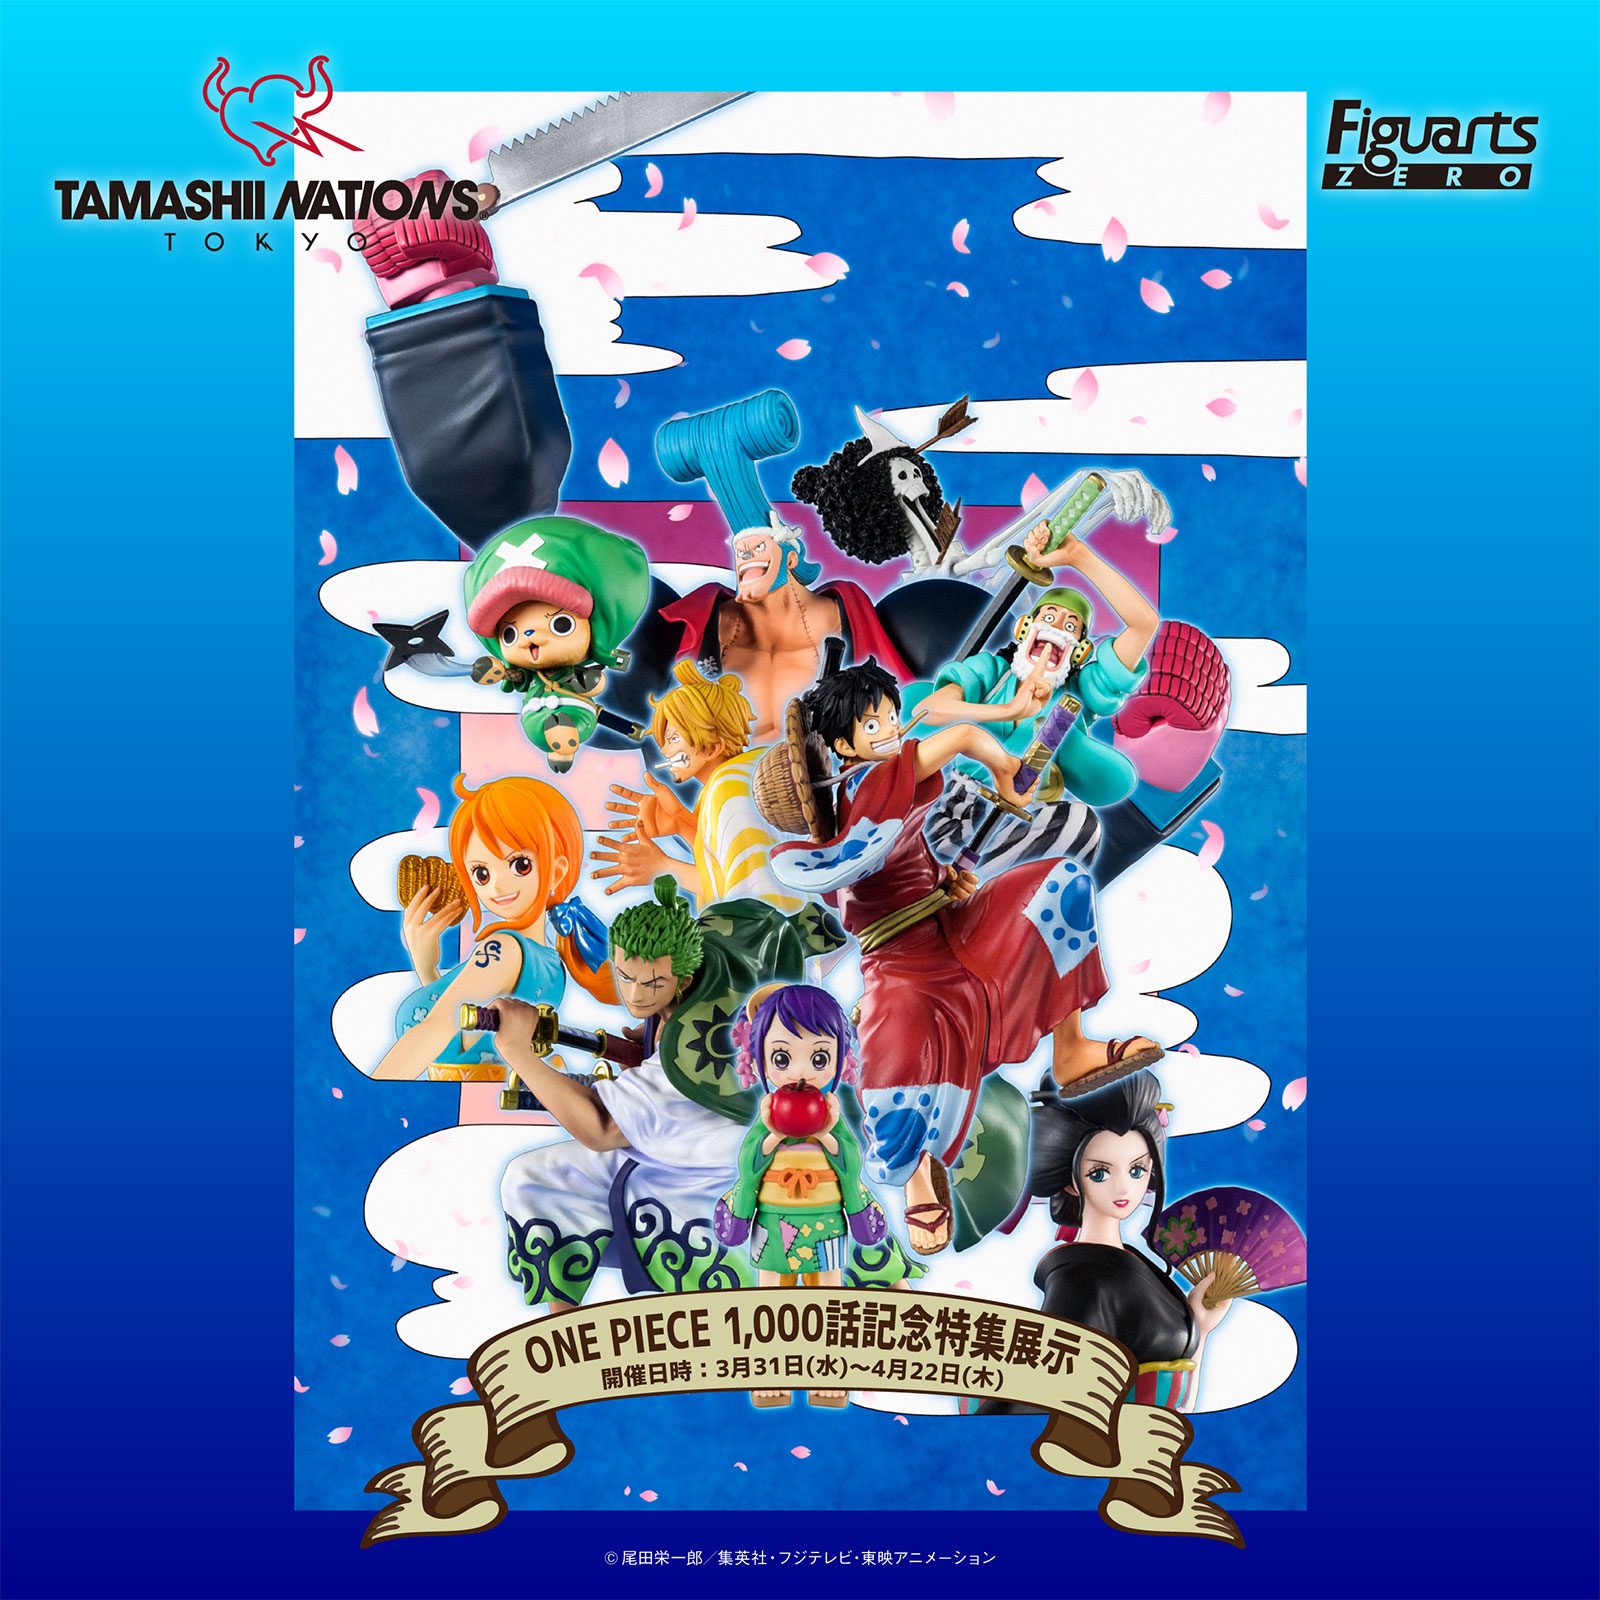 約150点のワンピースフィギュアが集結 One Piece 1 000話記念特集展示 秋葉原tamashii Nations Tokyoで開催 株式会社bandai Spiritsのプレスリリース